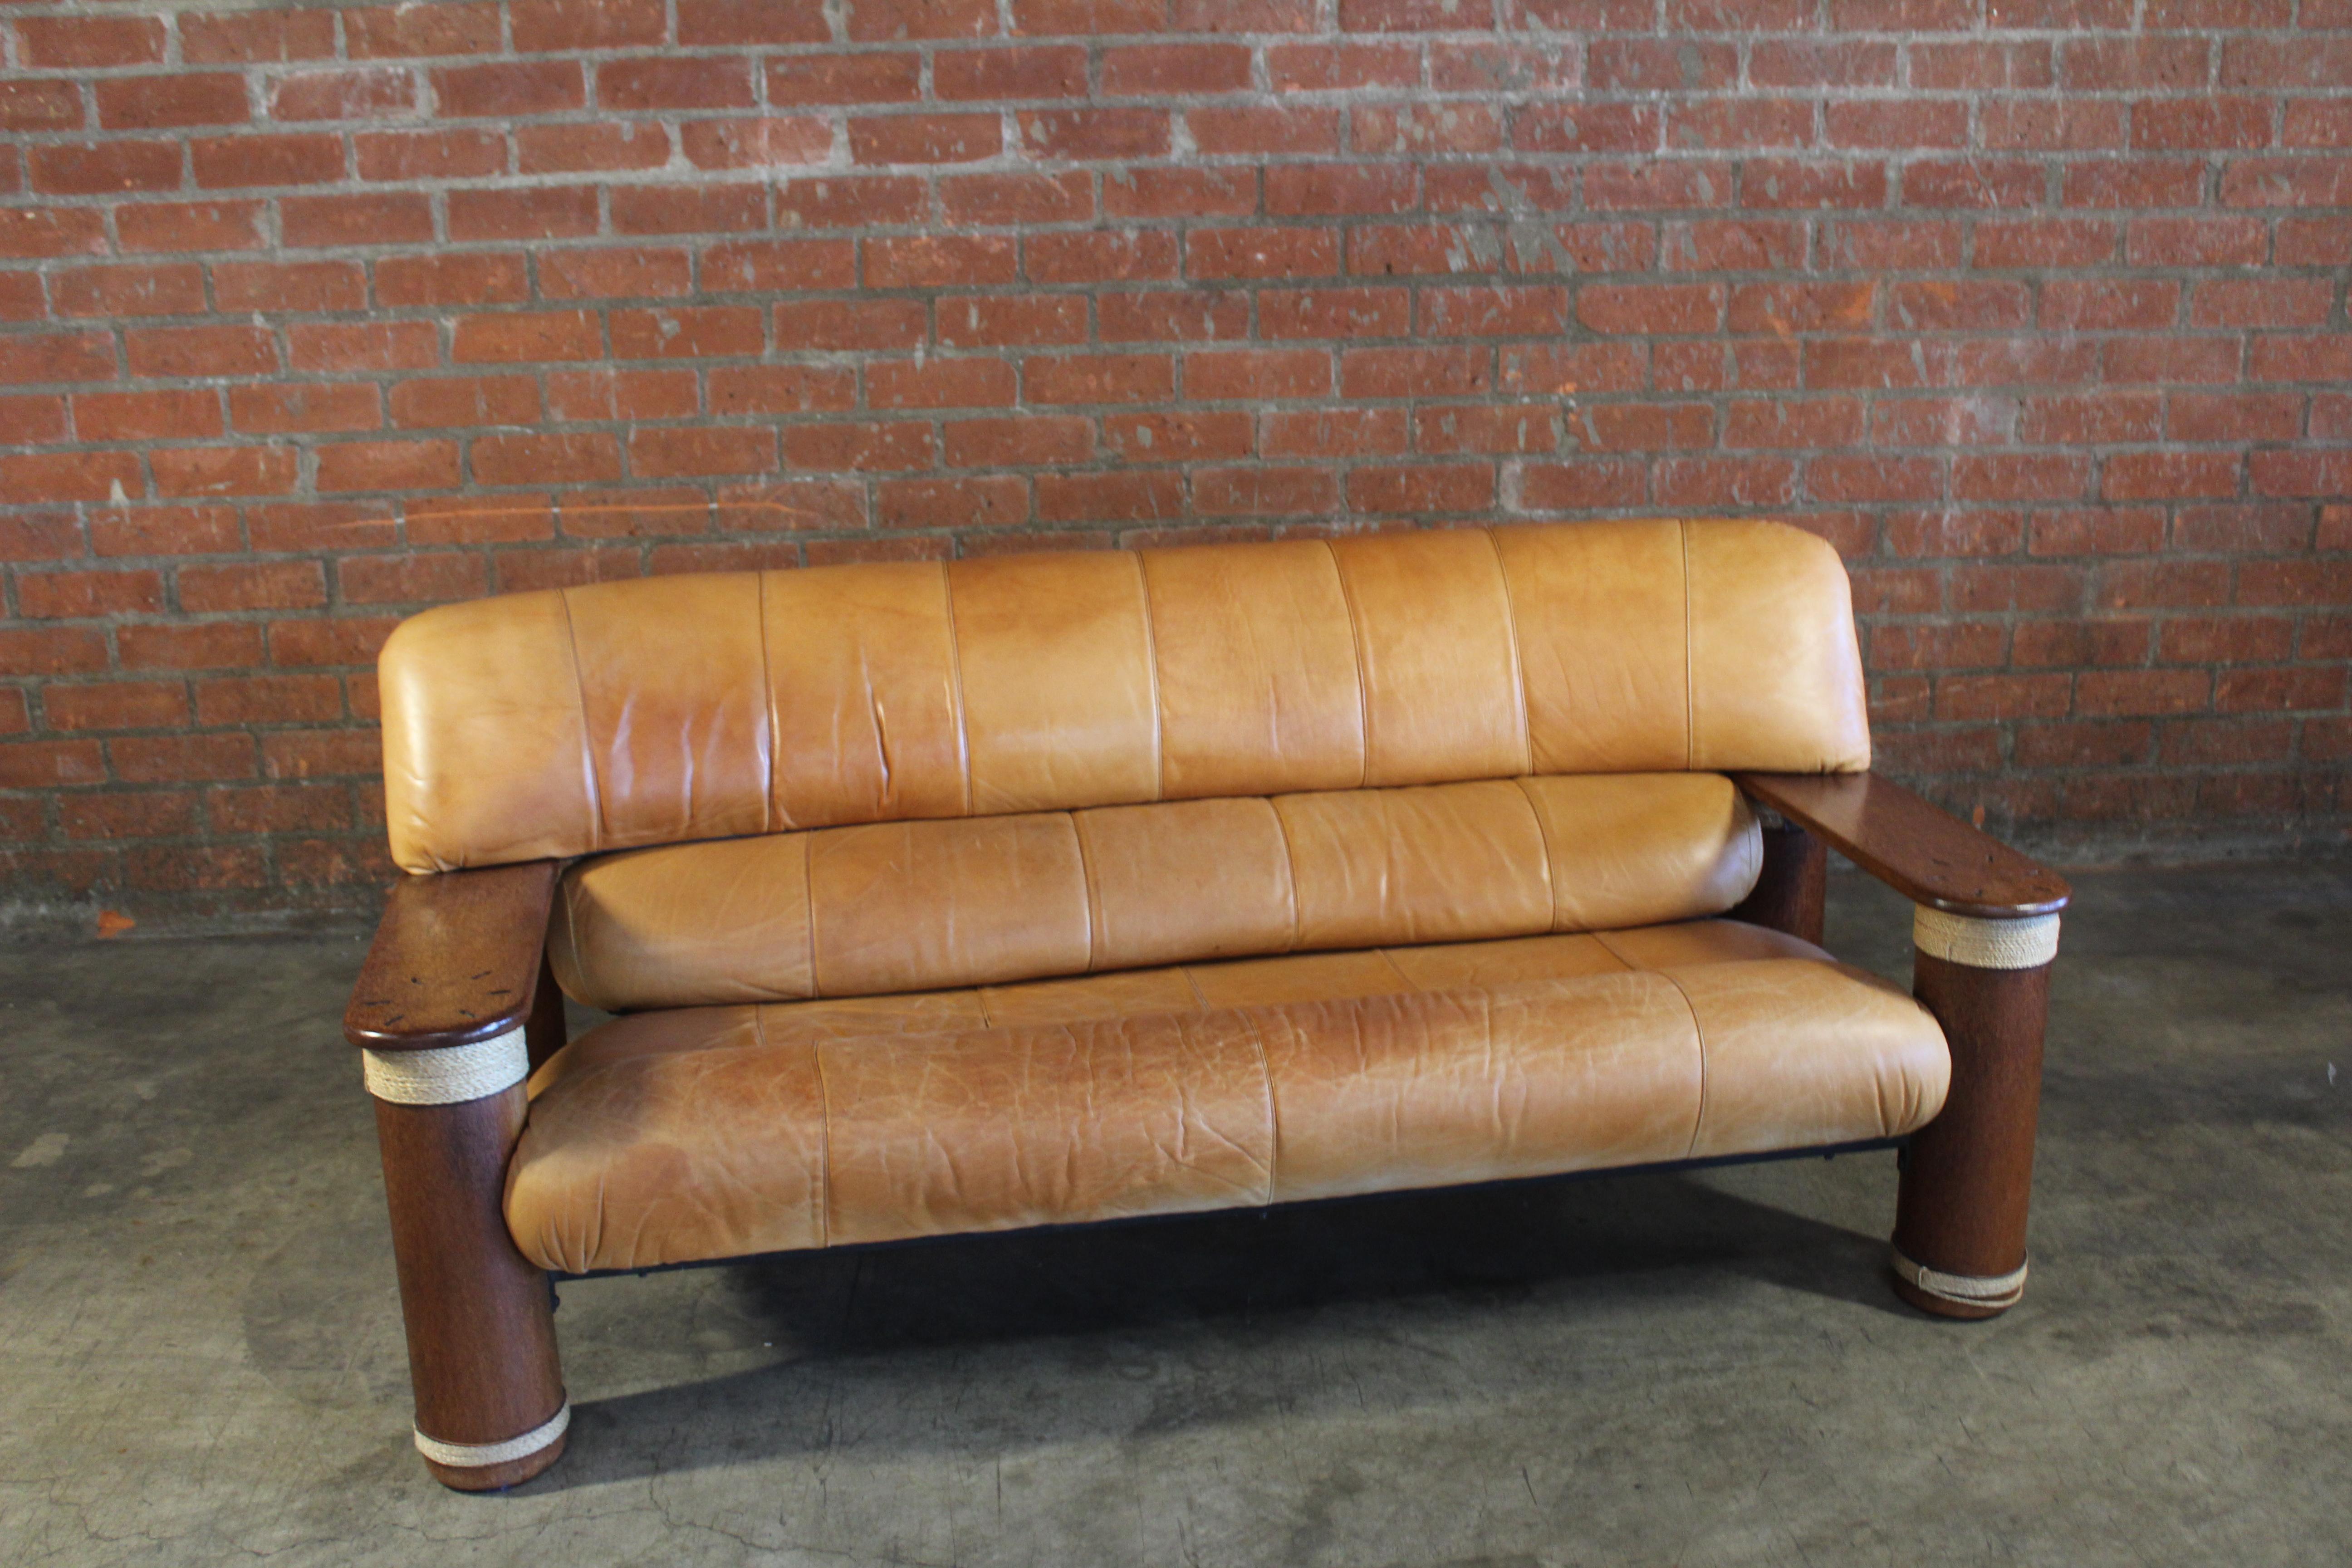 90s leather sofa